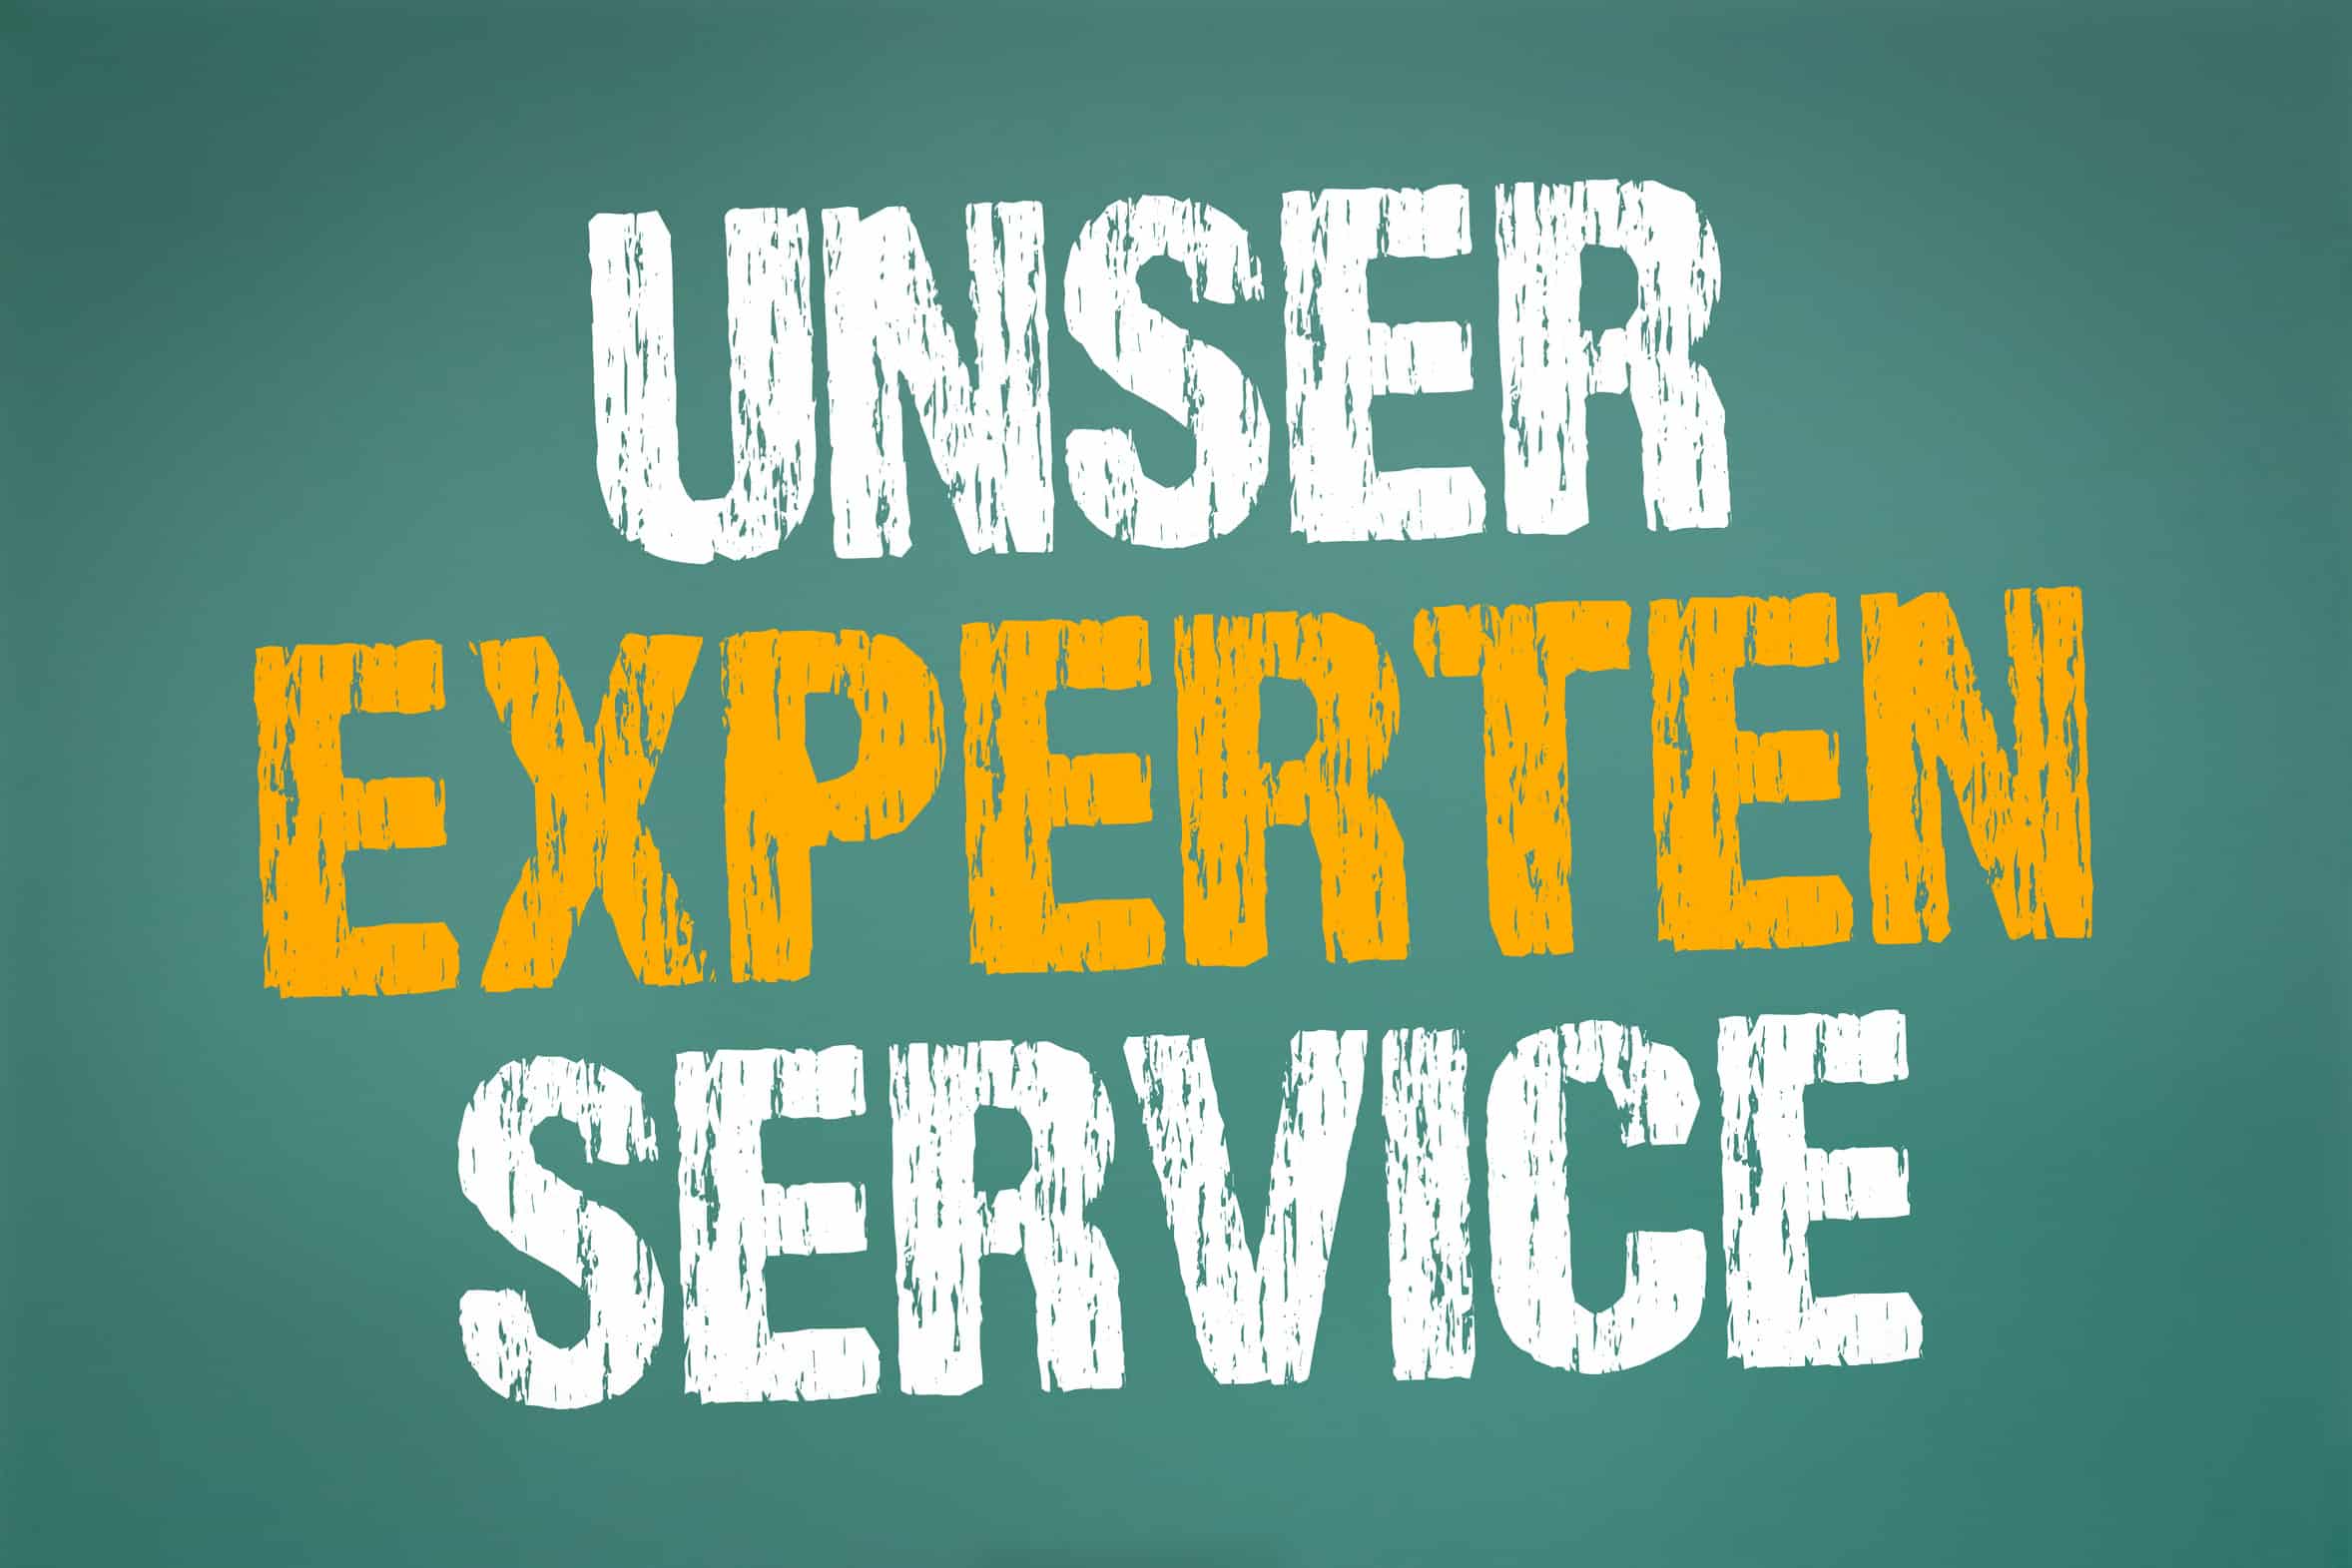 "Unser Experten Service" Schriftzug in weiß und gelb auf grünem Untergrund